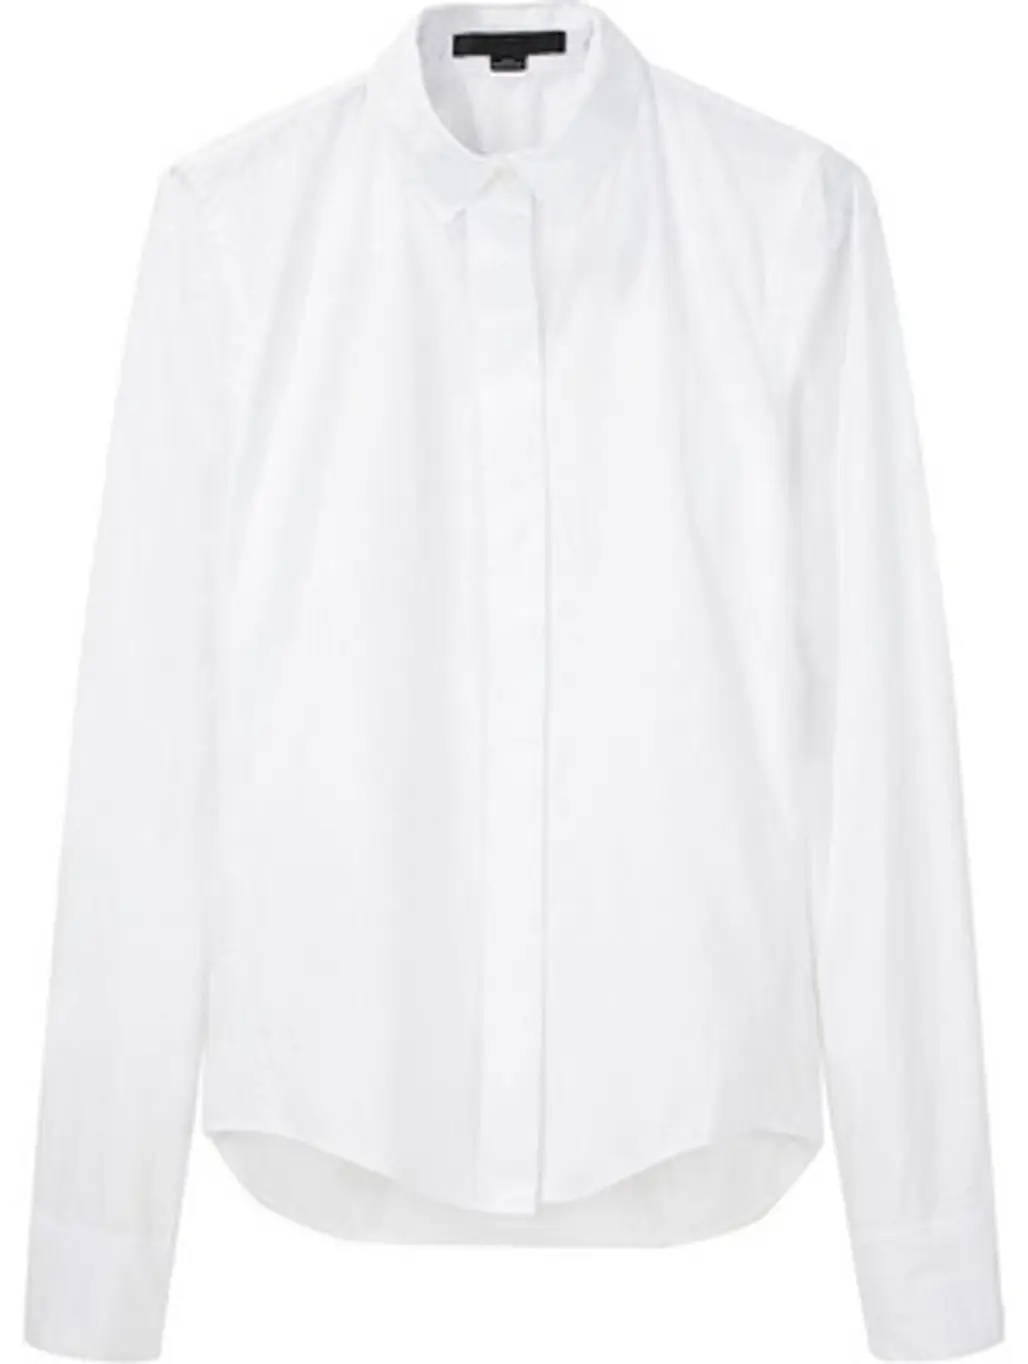 Alexander Wang Essential Cotton Poplin Shirt